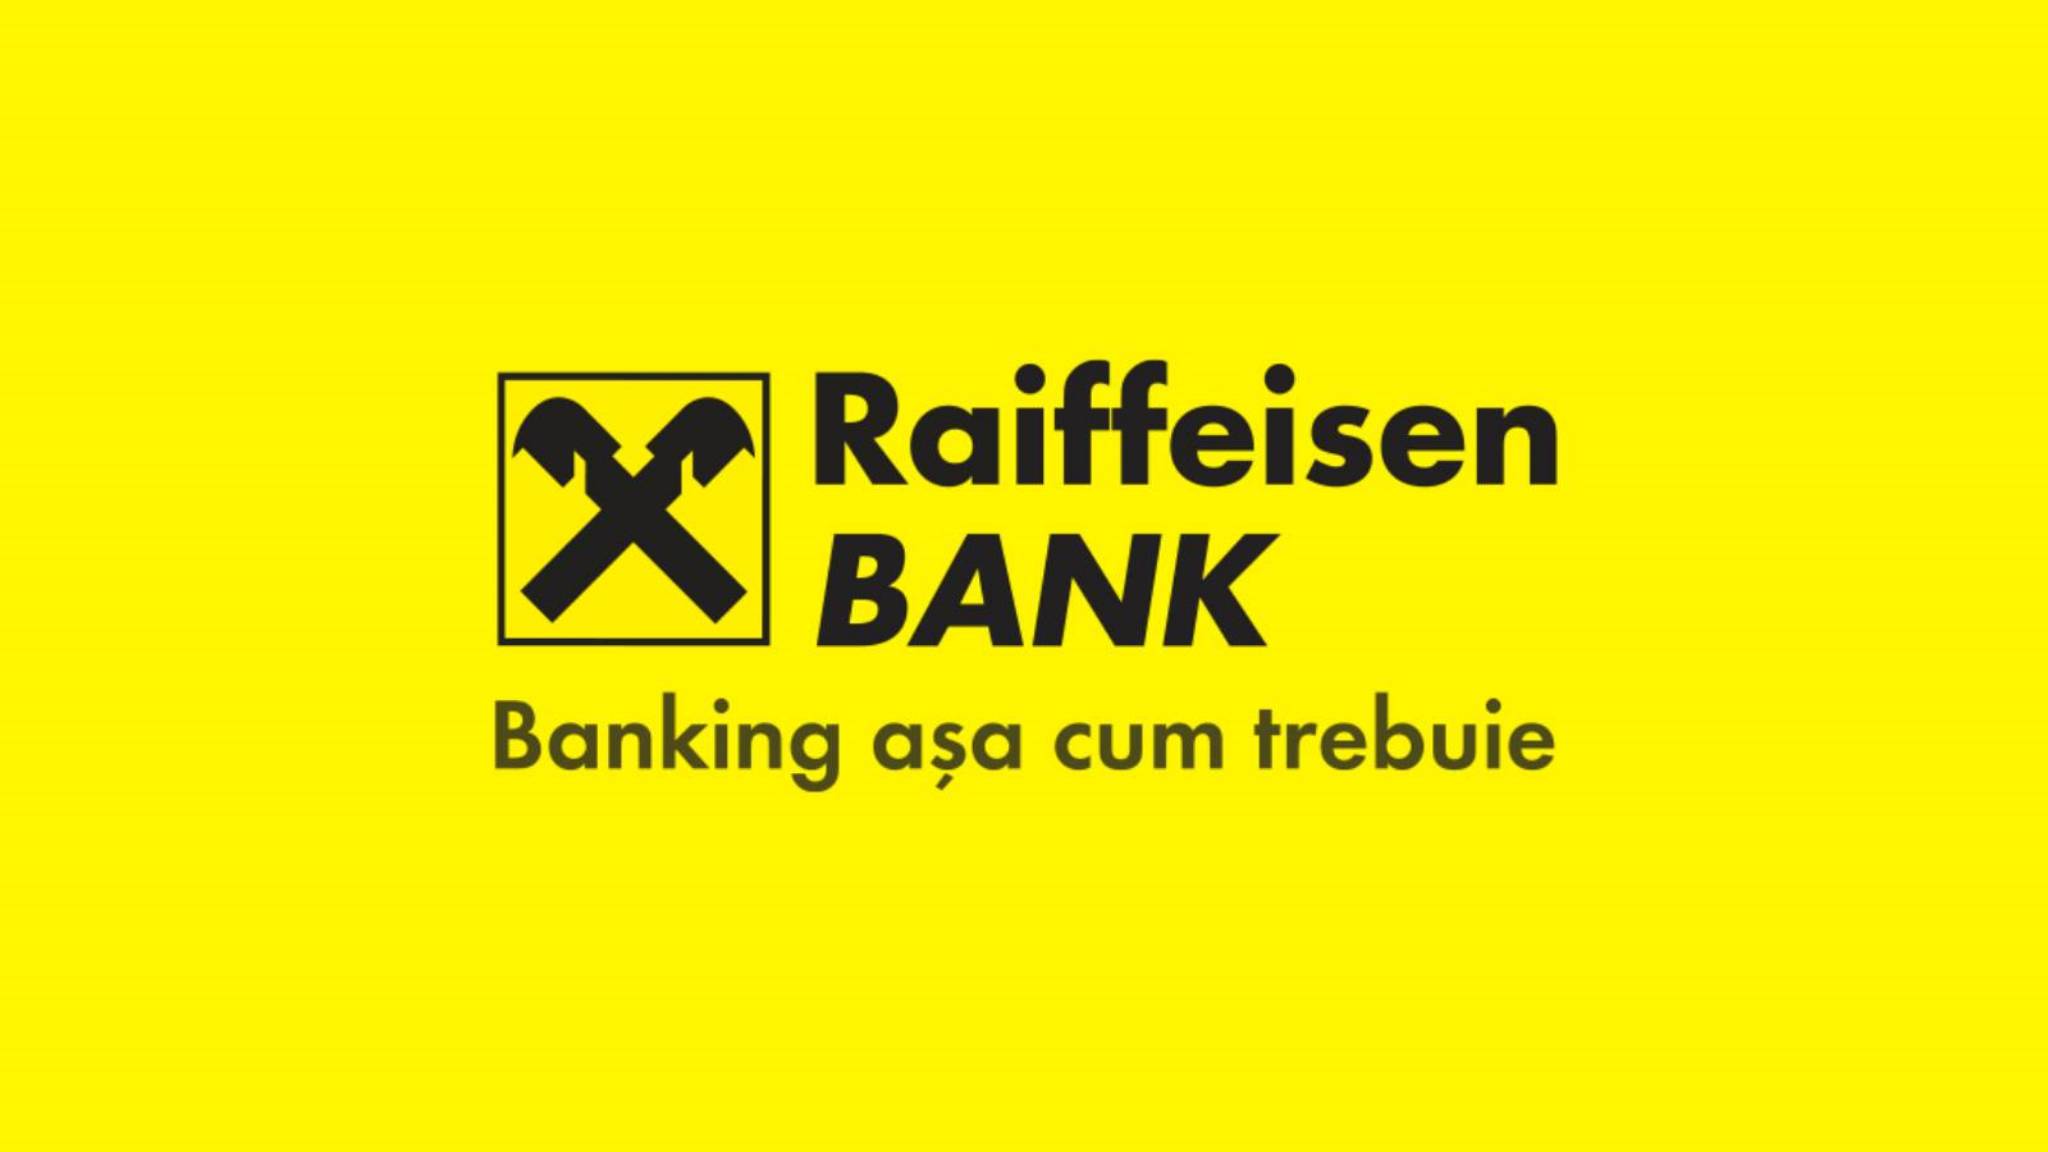 Raiffeisen Banks officielle besked VIGTIGT SIDSTE ØJEBLIK Rumænske kunder